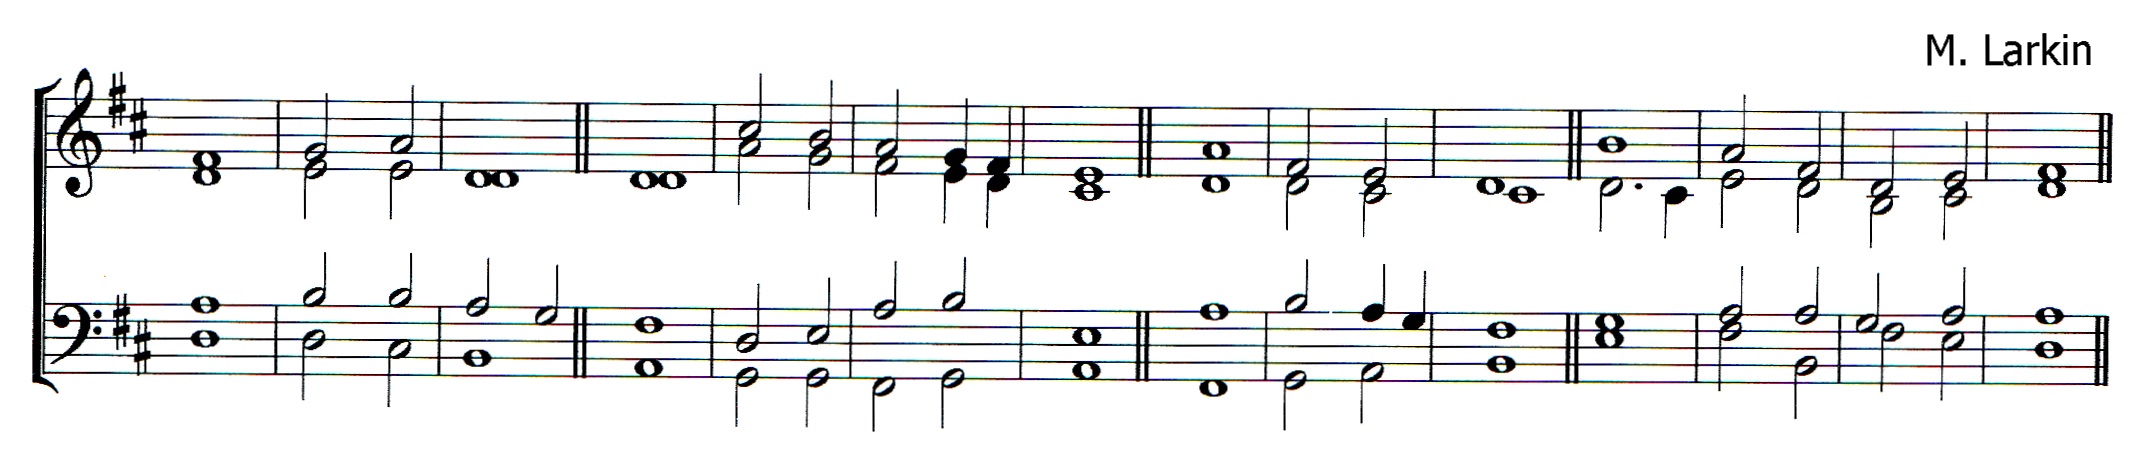 Double chant in D major by Matthew Larkin